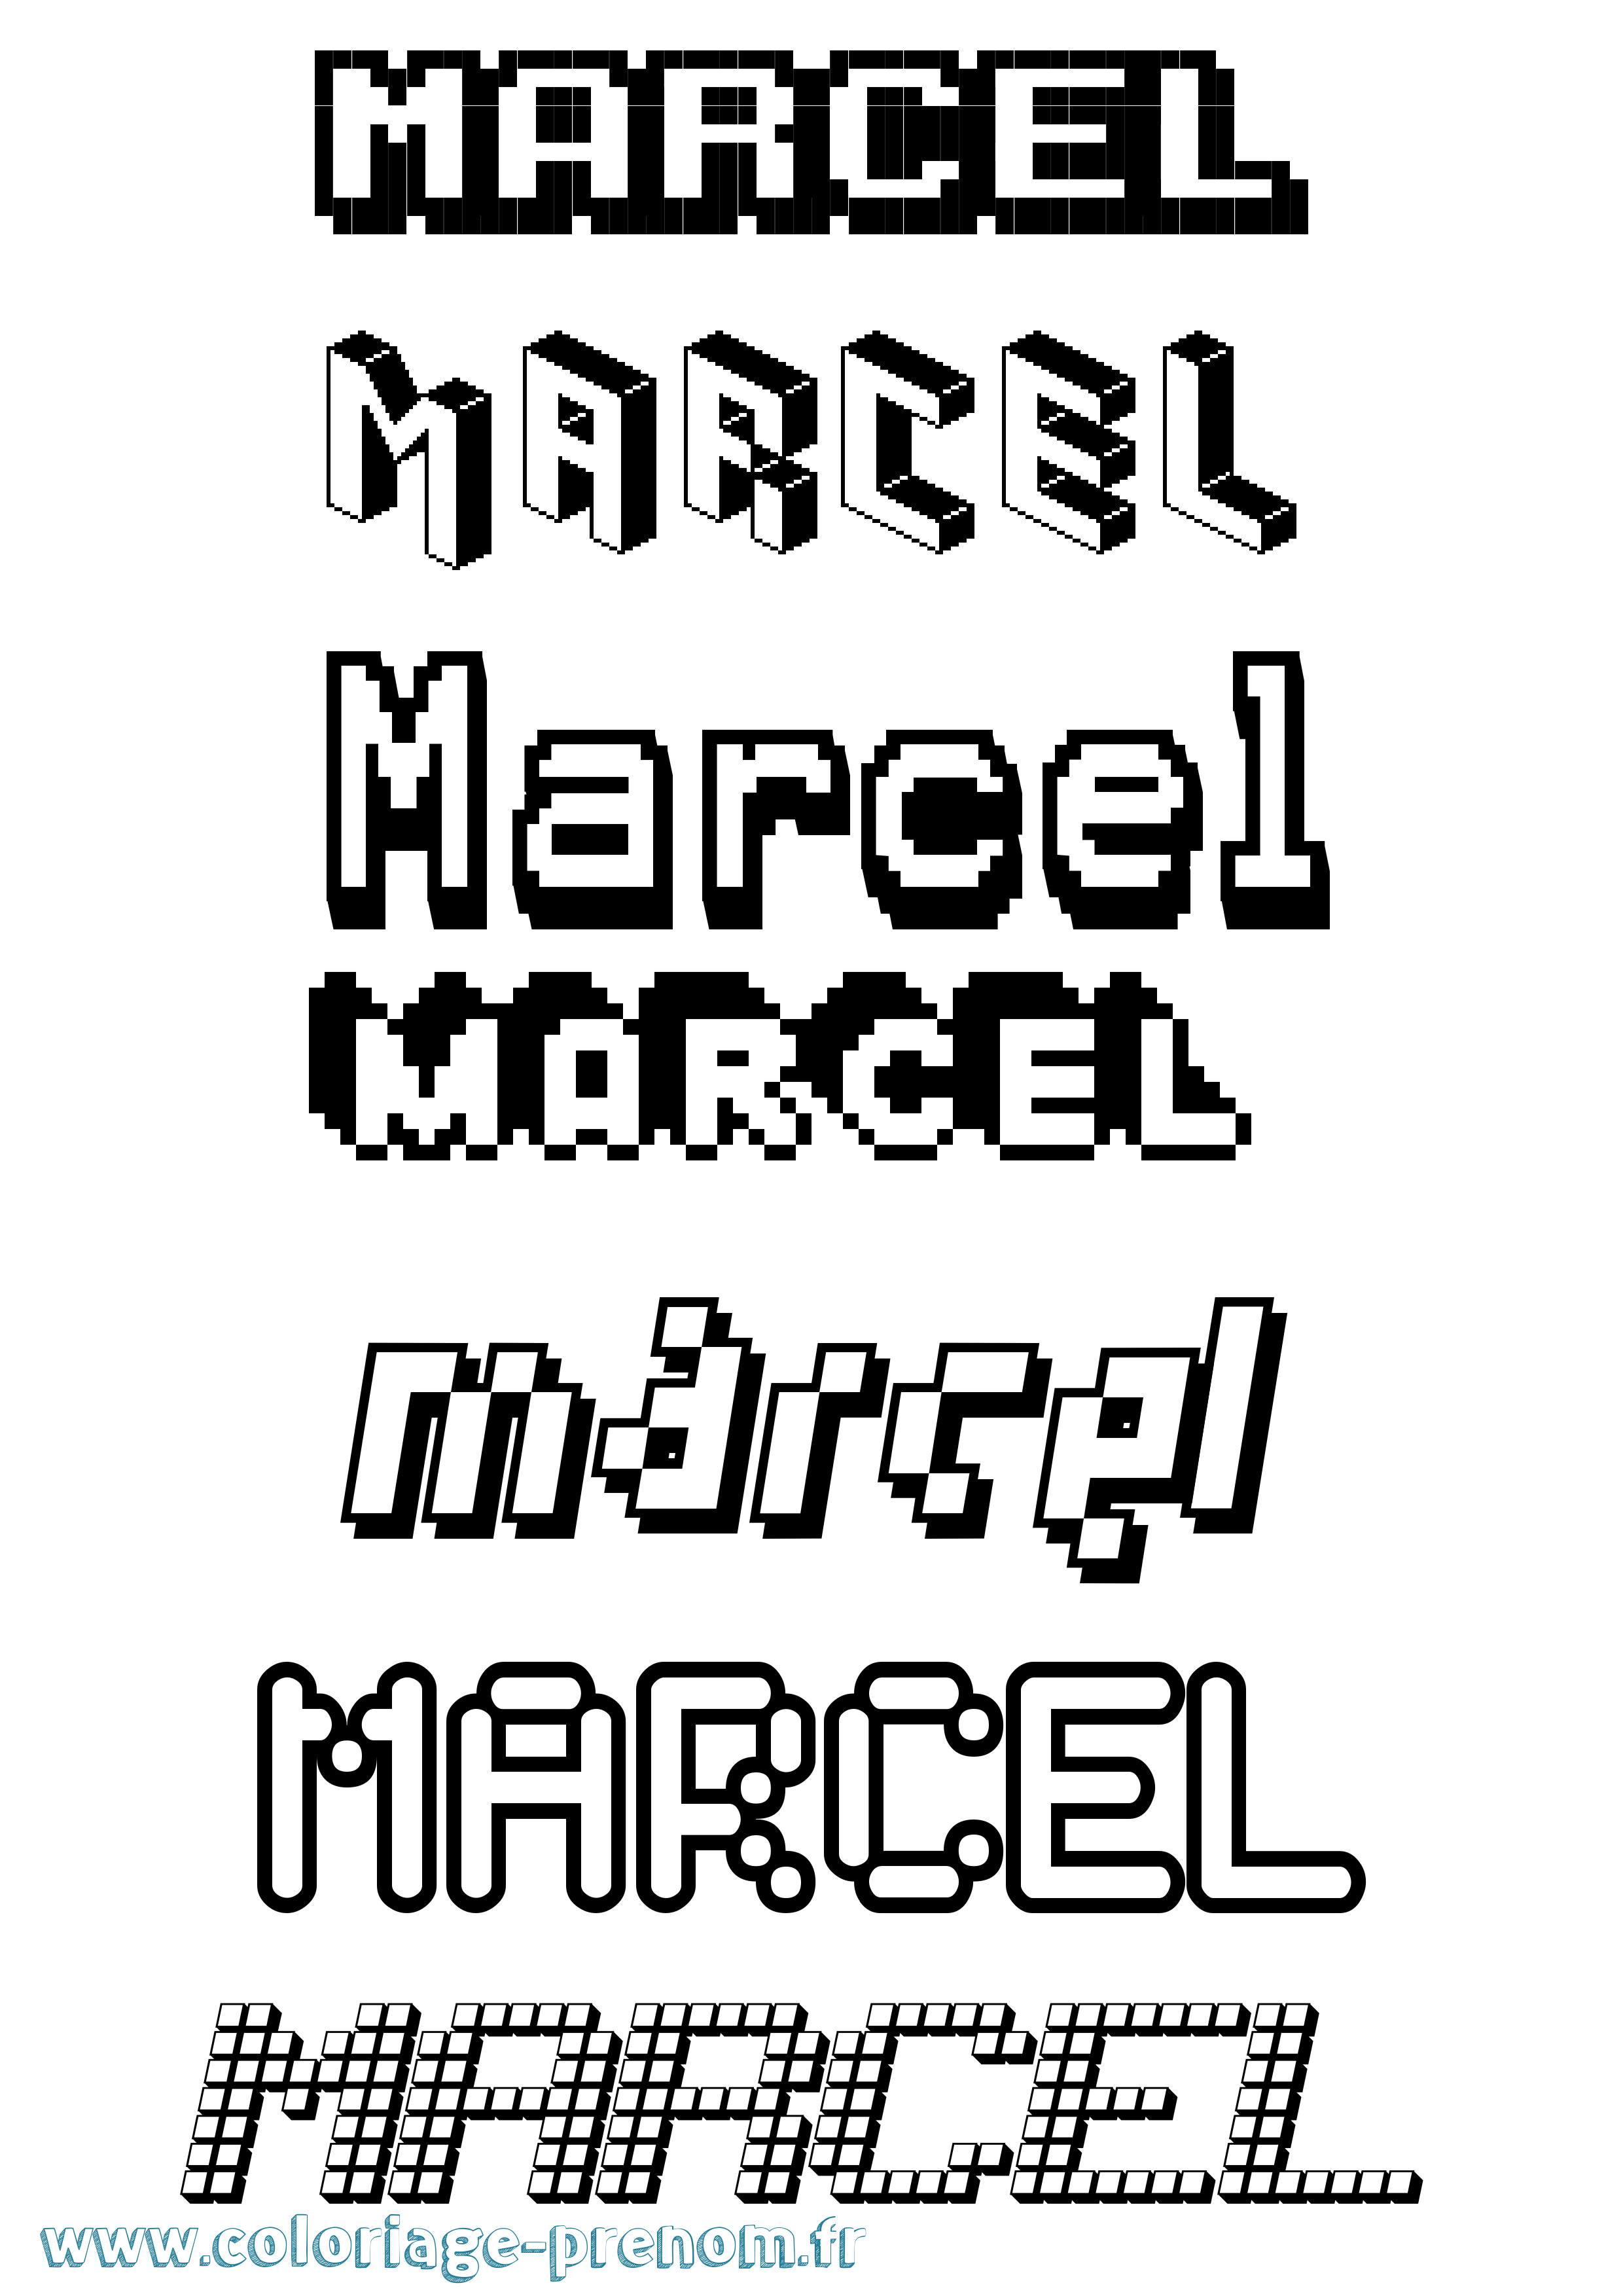 Coloriage prénom Marcel Pixel